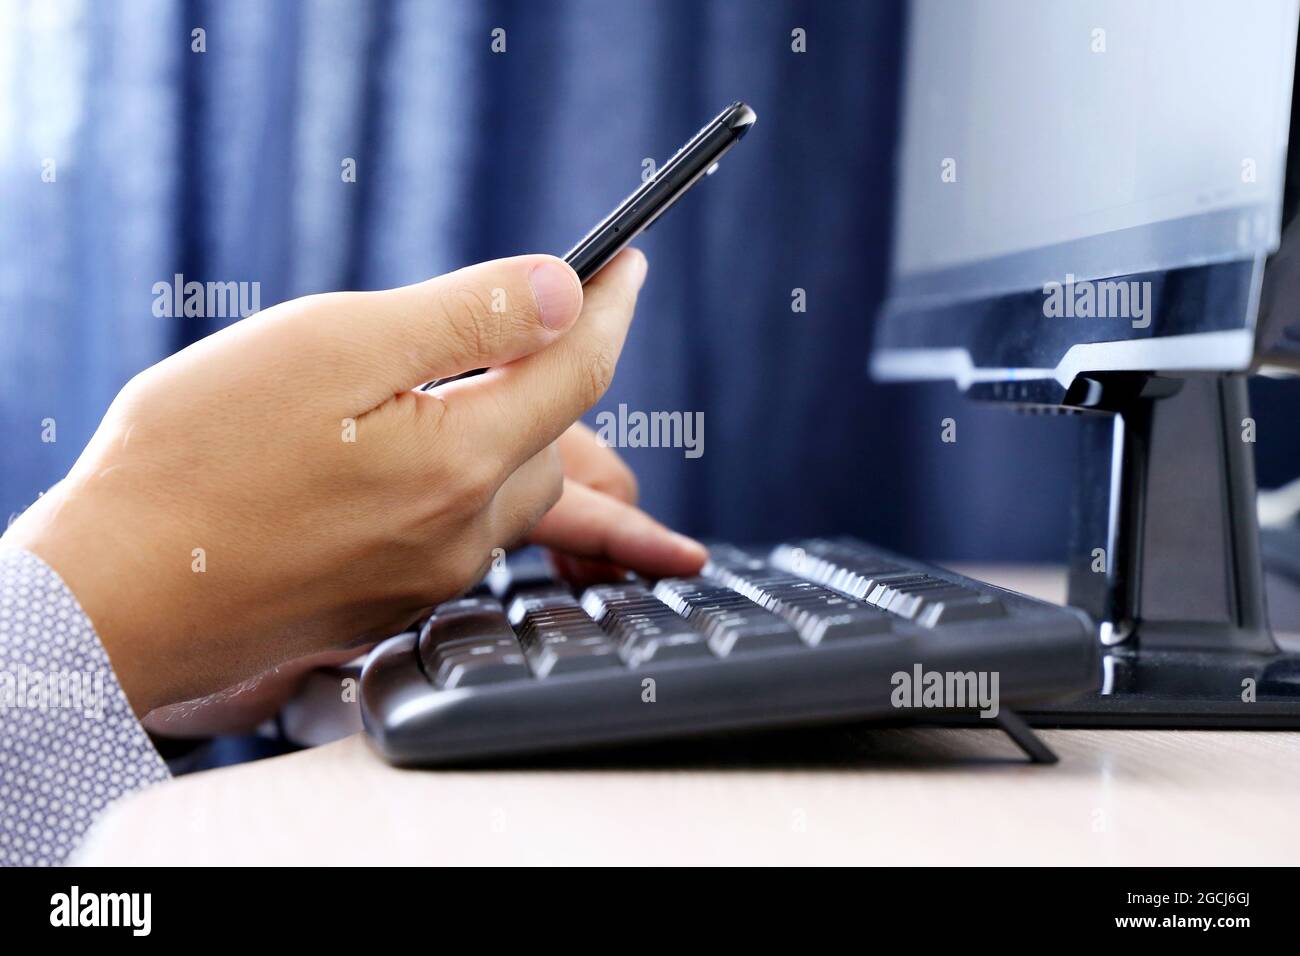 Homme utilisant un smartphone sur l'arrière-plan du clavier du PC. Concept de communication en ligne, travail au bureau ou à domicile et paiement Banque D'Images